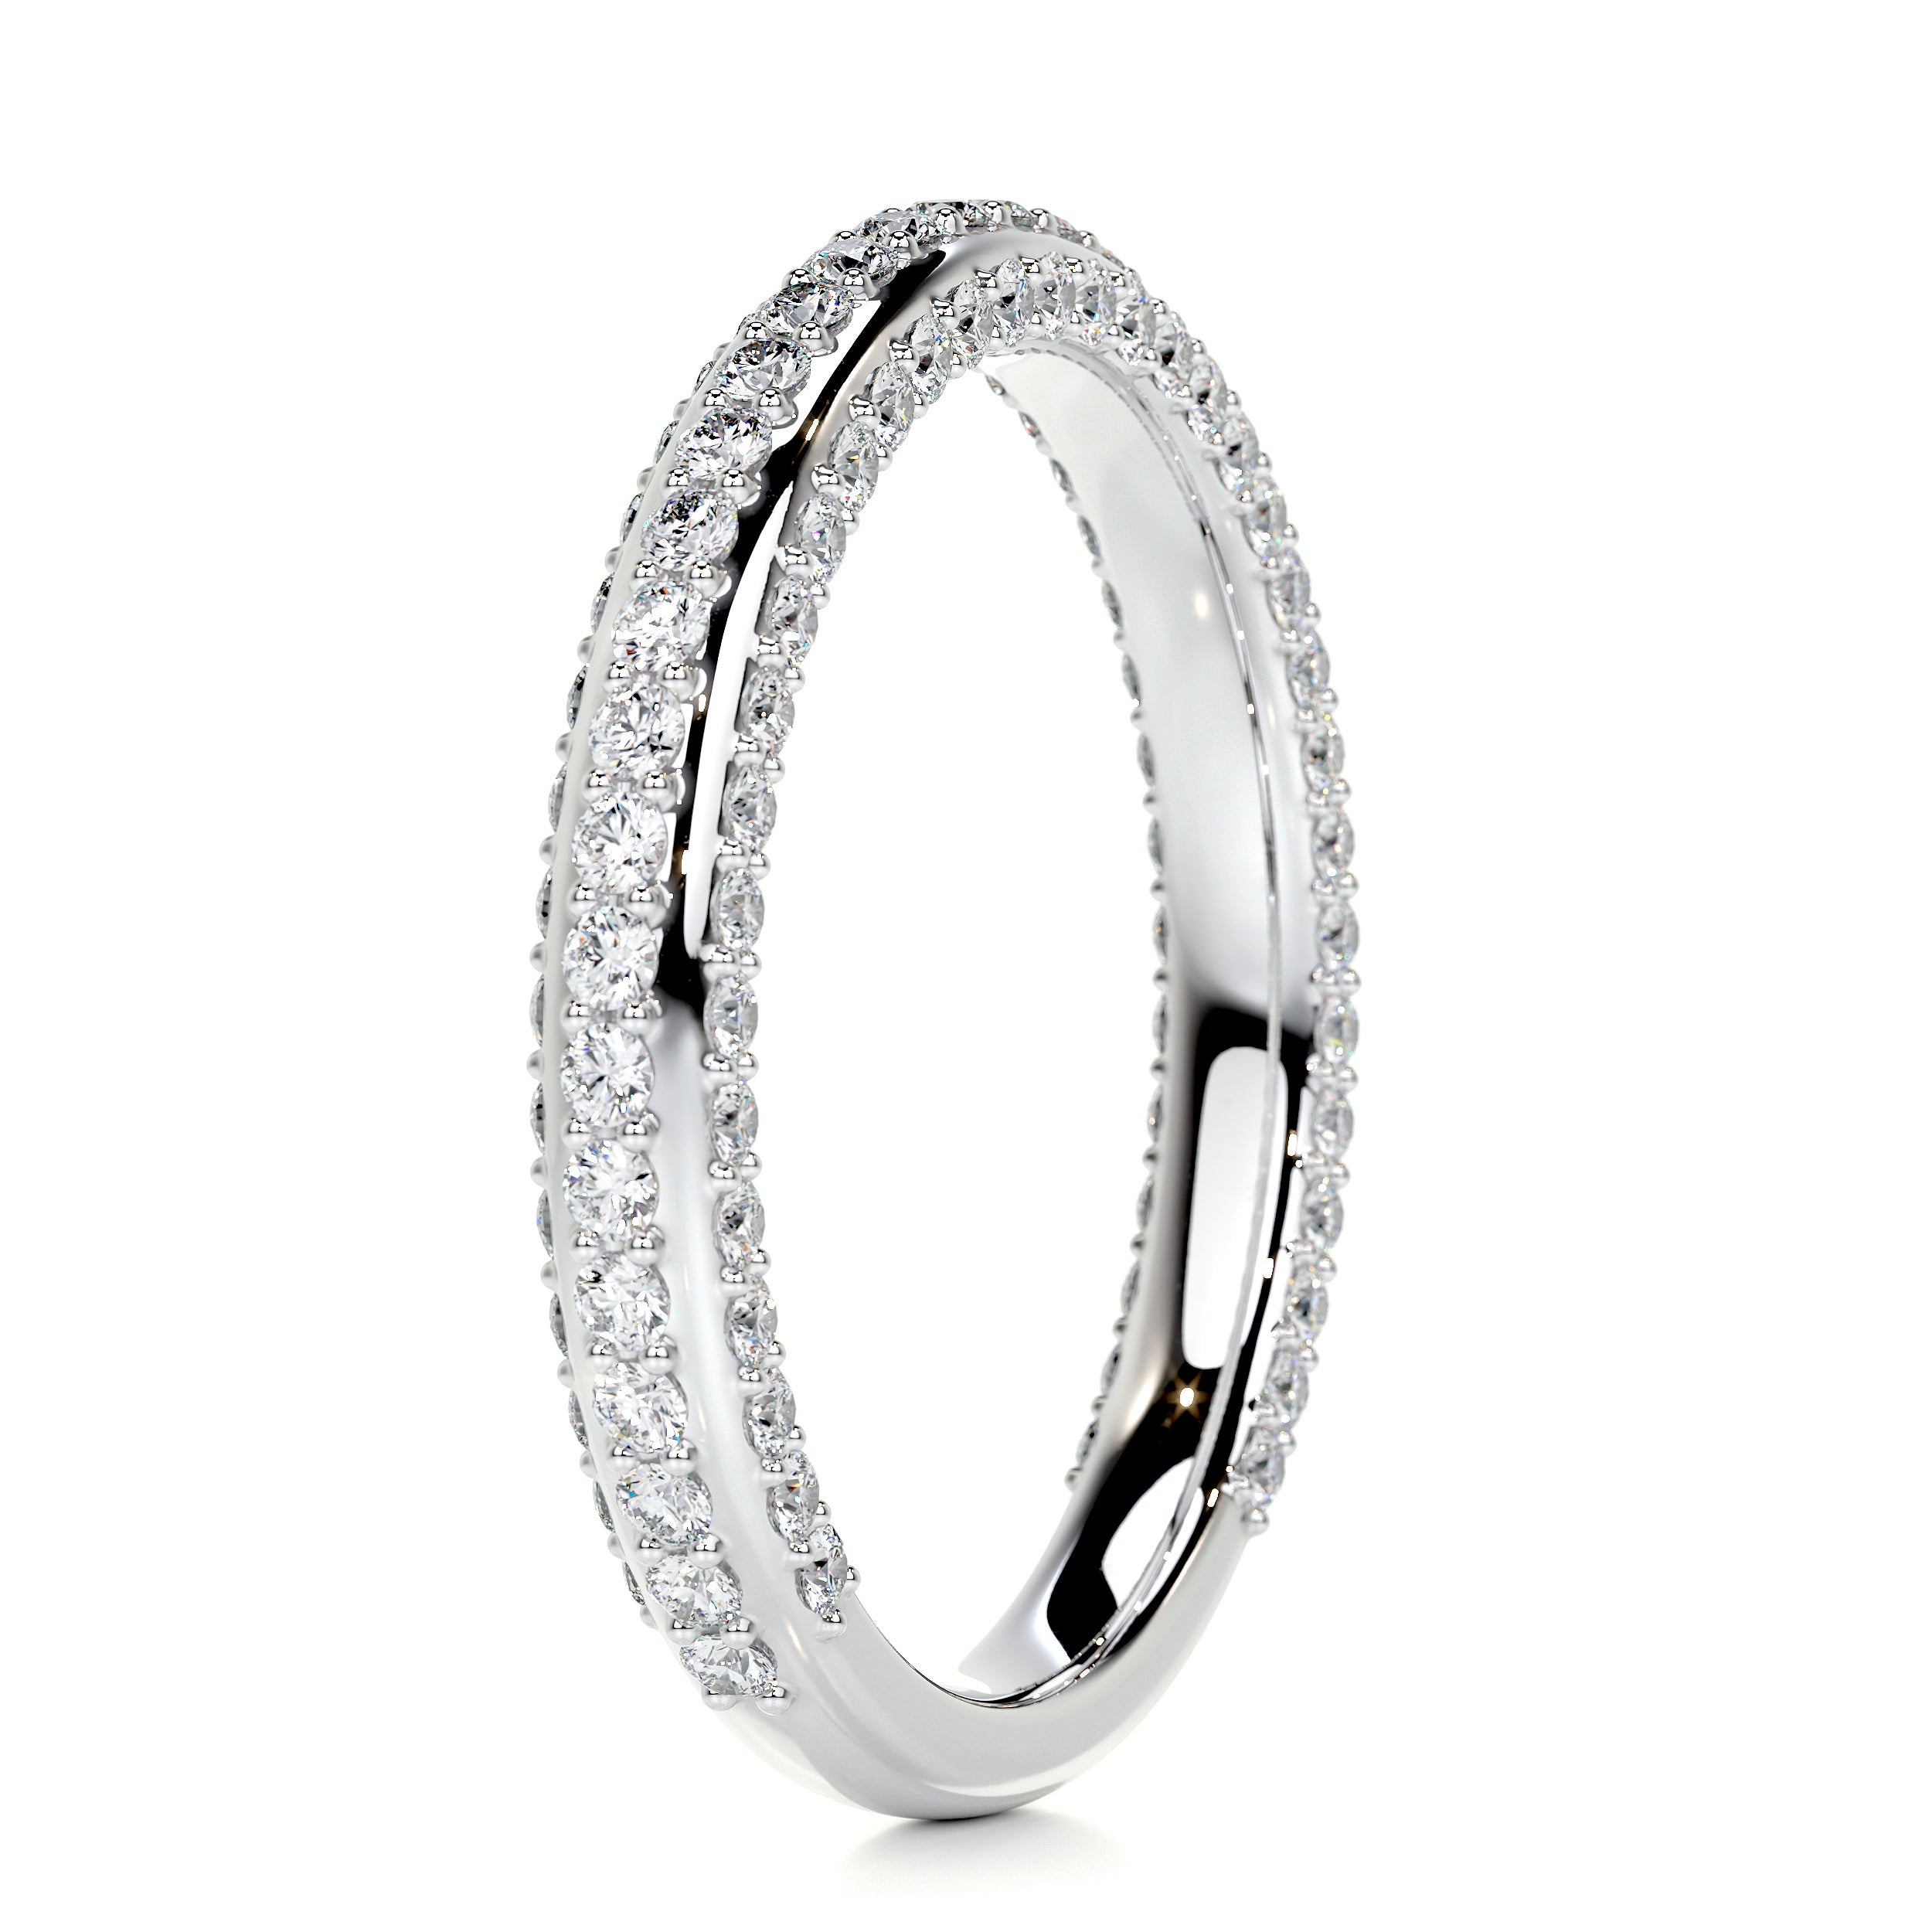 Anastasia Diamond Wedding Ring   (0.75 Carat) -14K White Gold